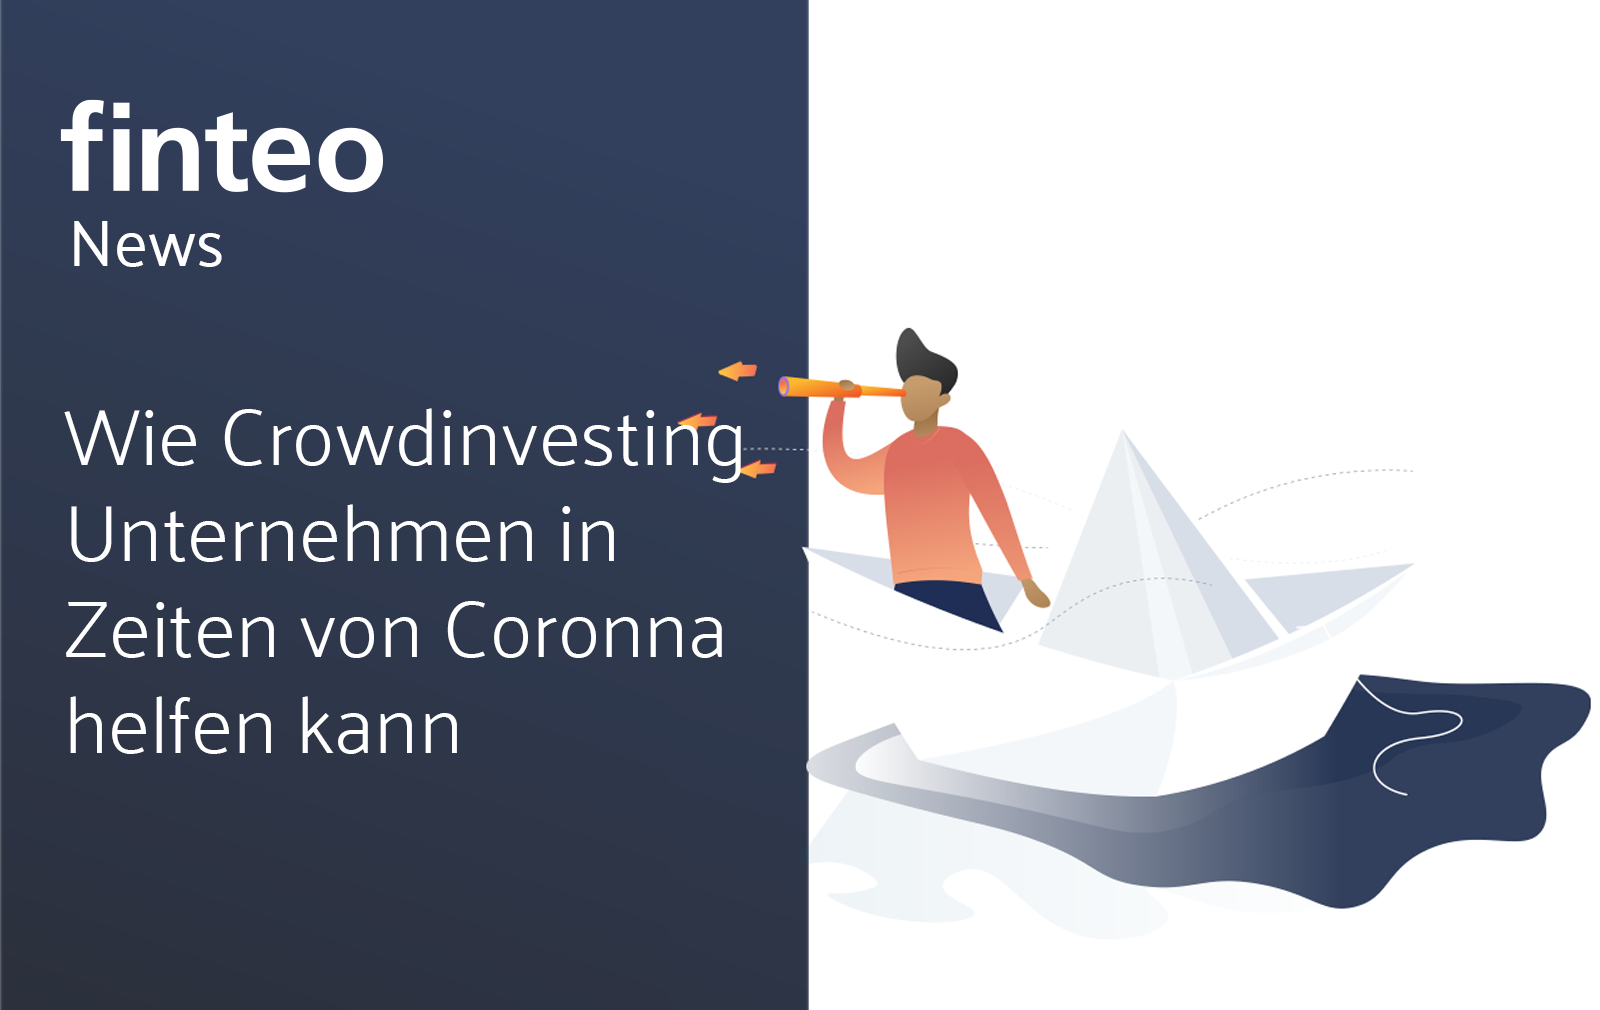 finteo.de|Wie Crowdinvesting Unternehmen in Zeiten von Corona helfen kann-News – corona